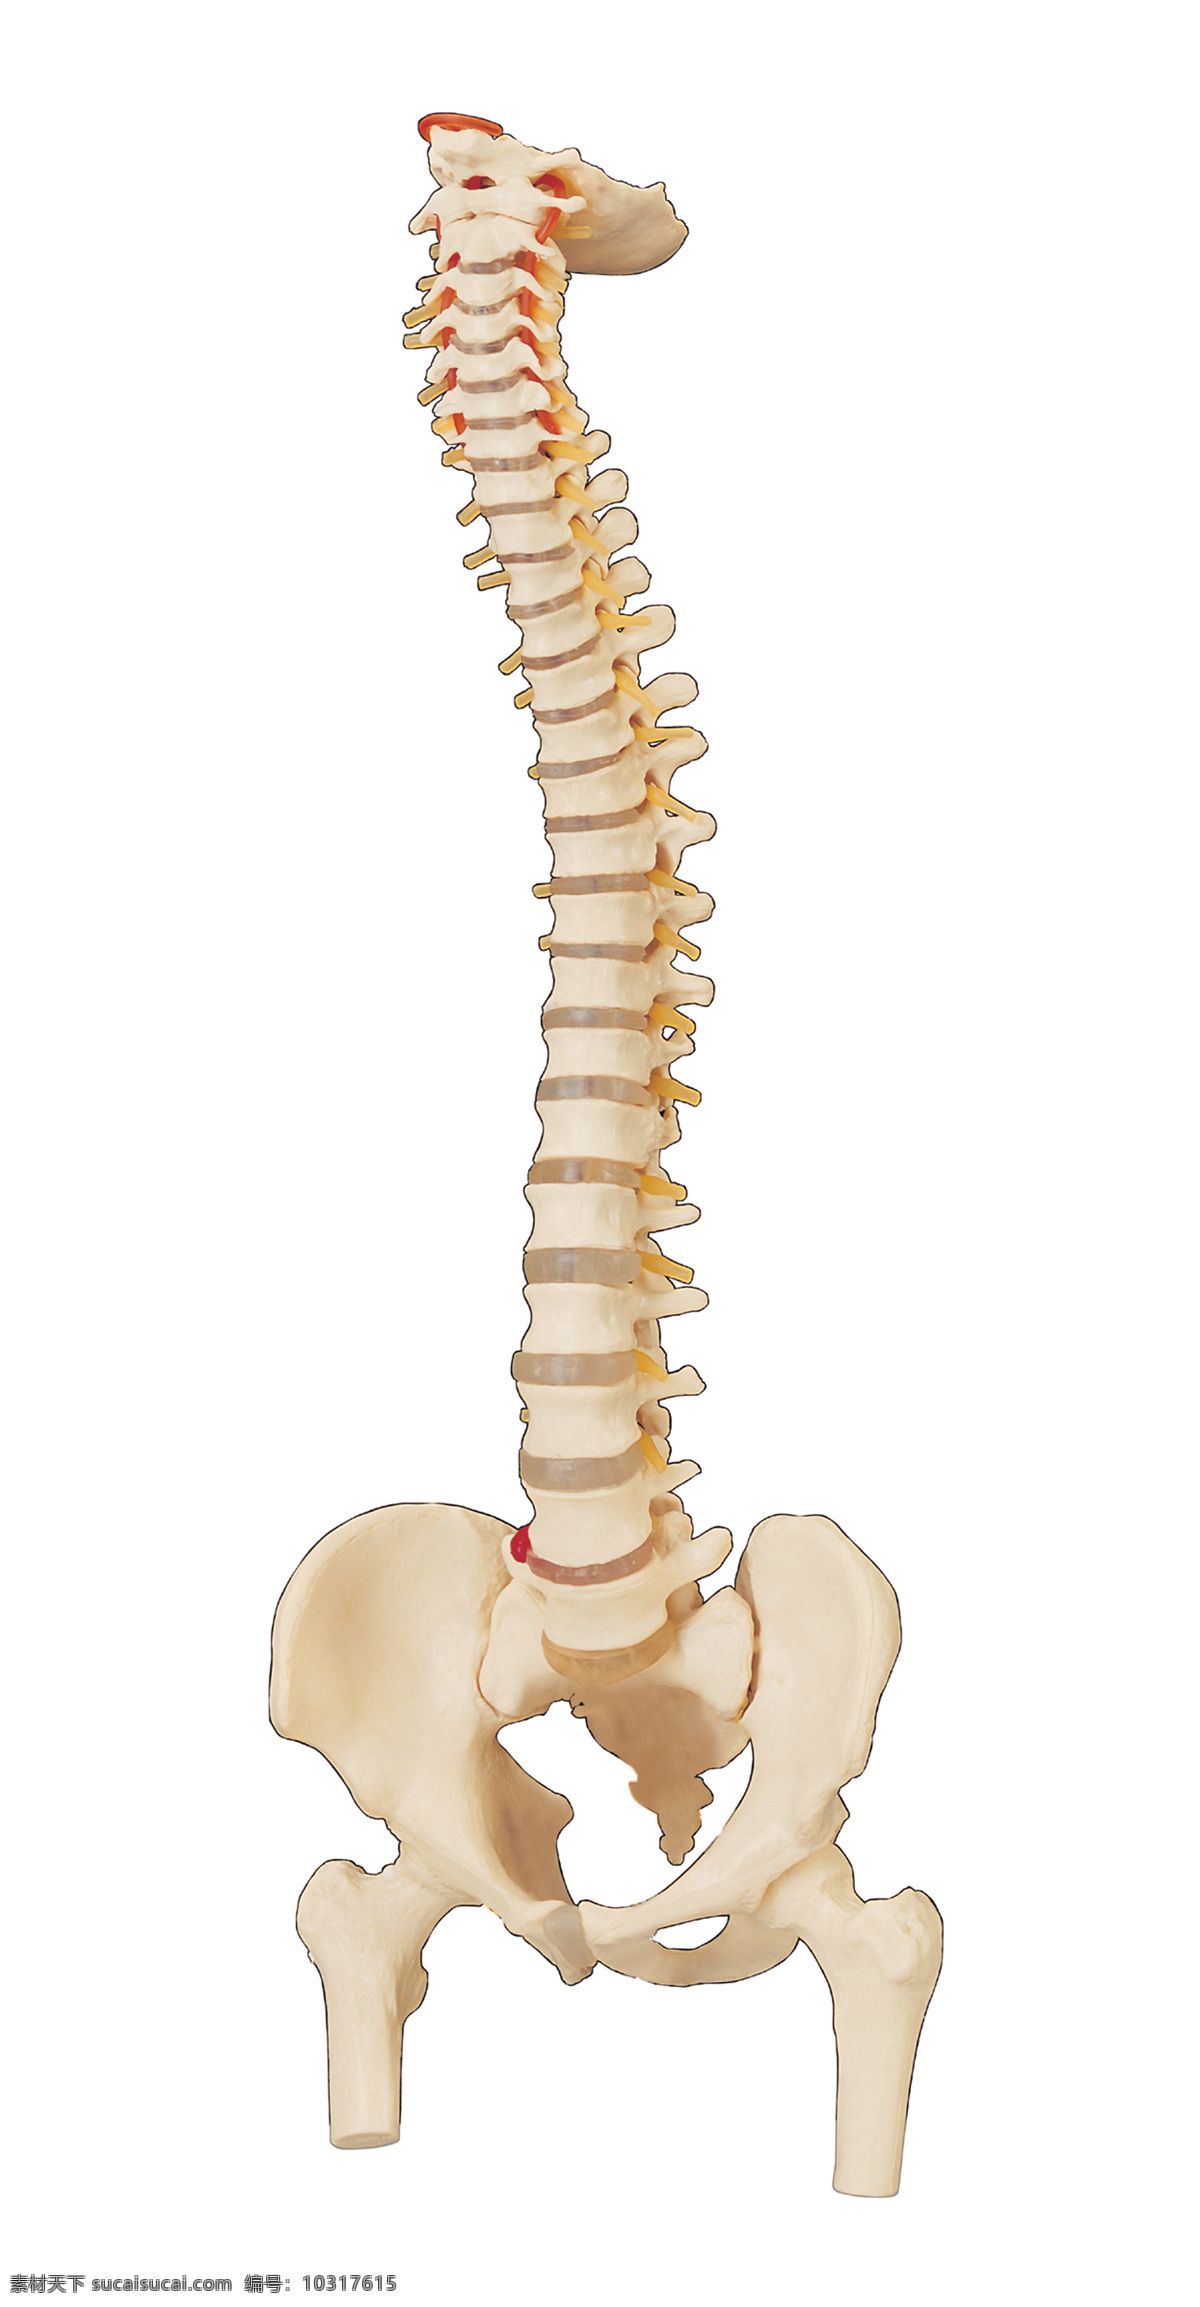 人体骨骼 骨骼 骨头 腰椎骨 盆骨 人骨骼 医疗护理 现代科技